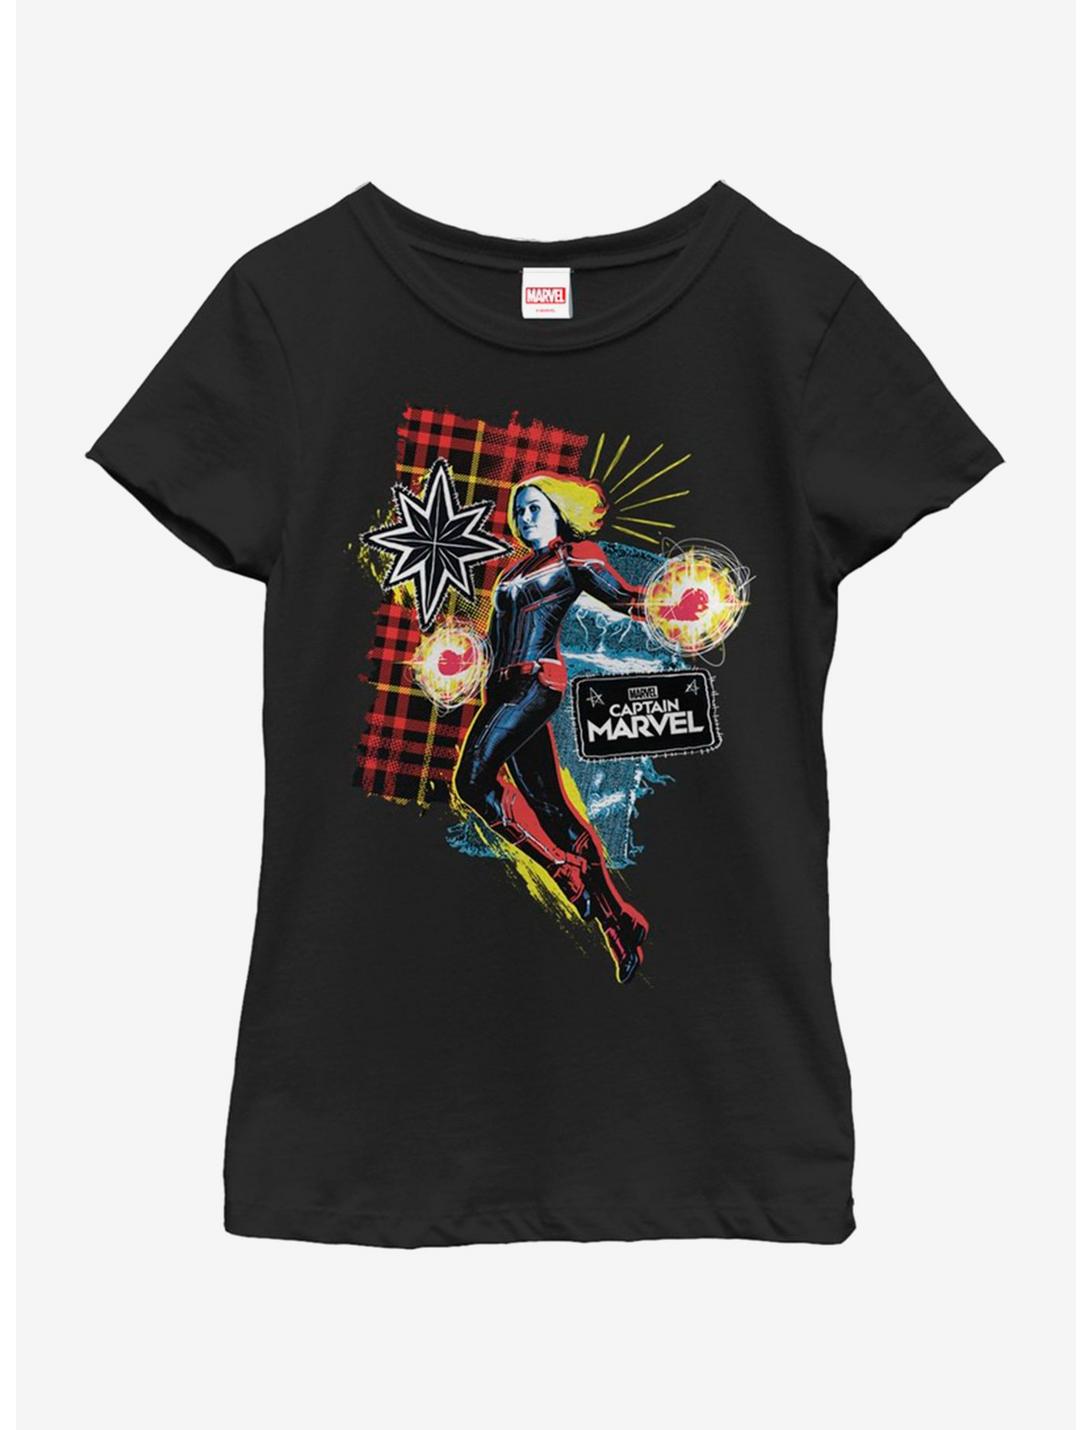 Marvel Captain Marvel 90s Grunge Patch Marvel Youth Girls T-Shirt, BLACK, hi-res